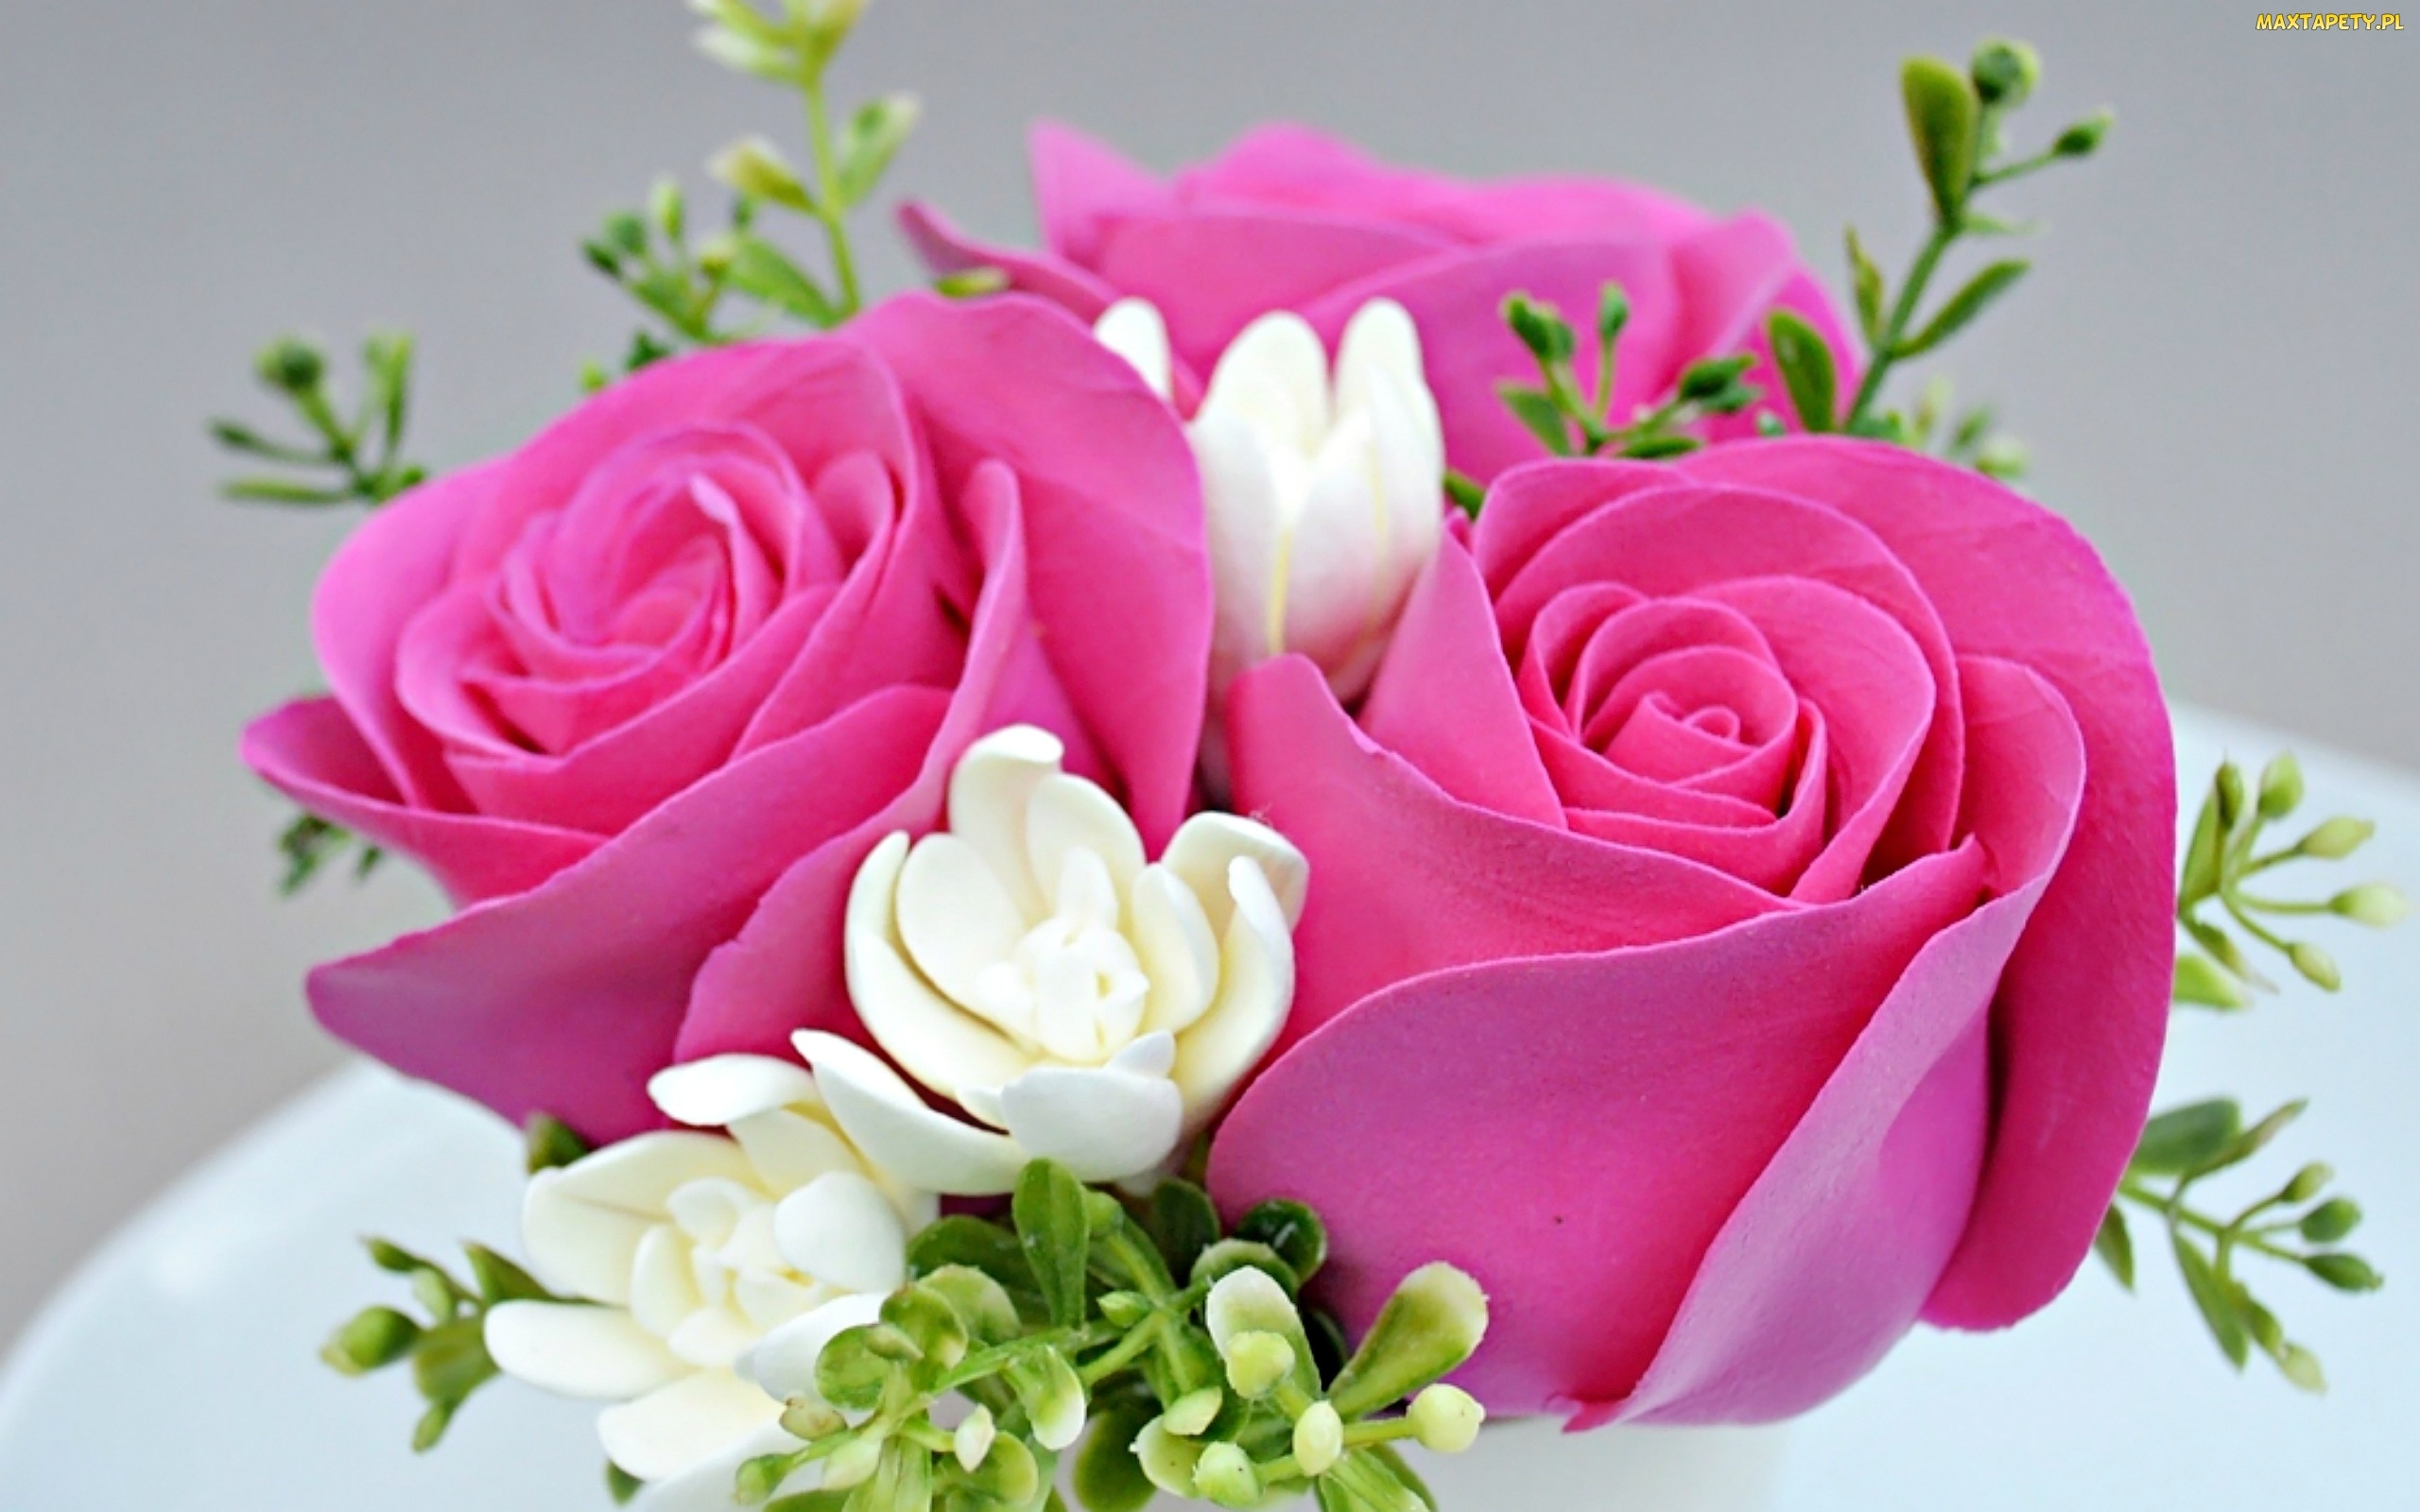 wallpaper roz,flower,flowering plant,pink,rose,garden roses